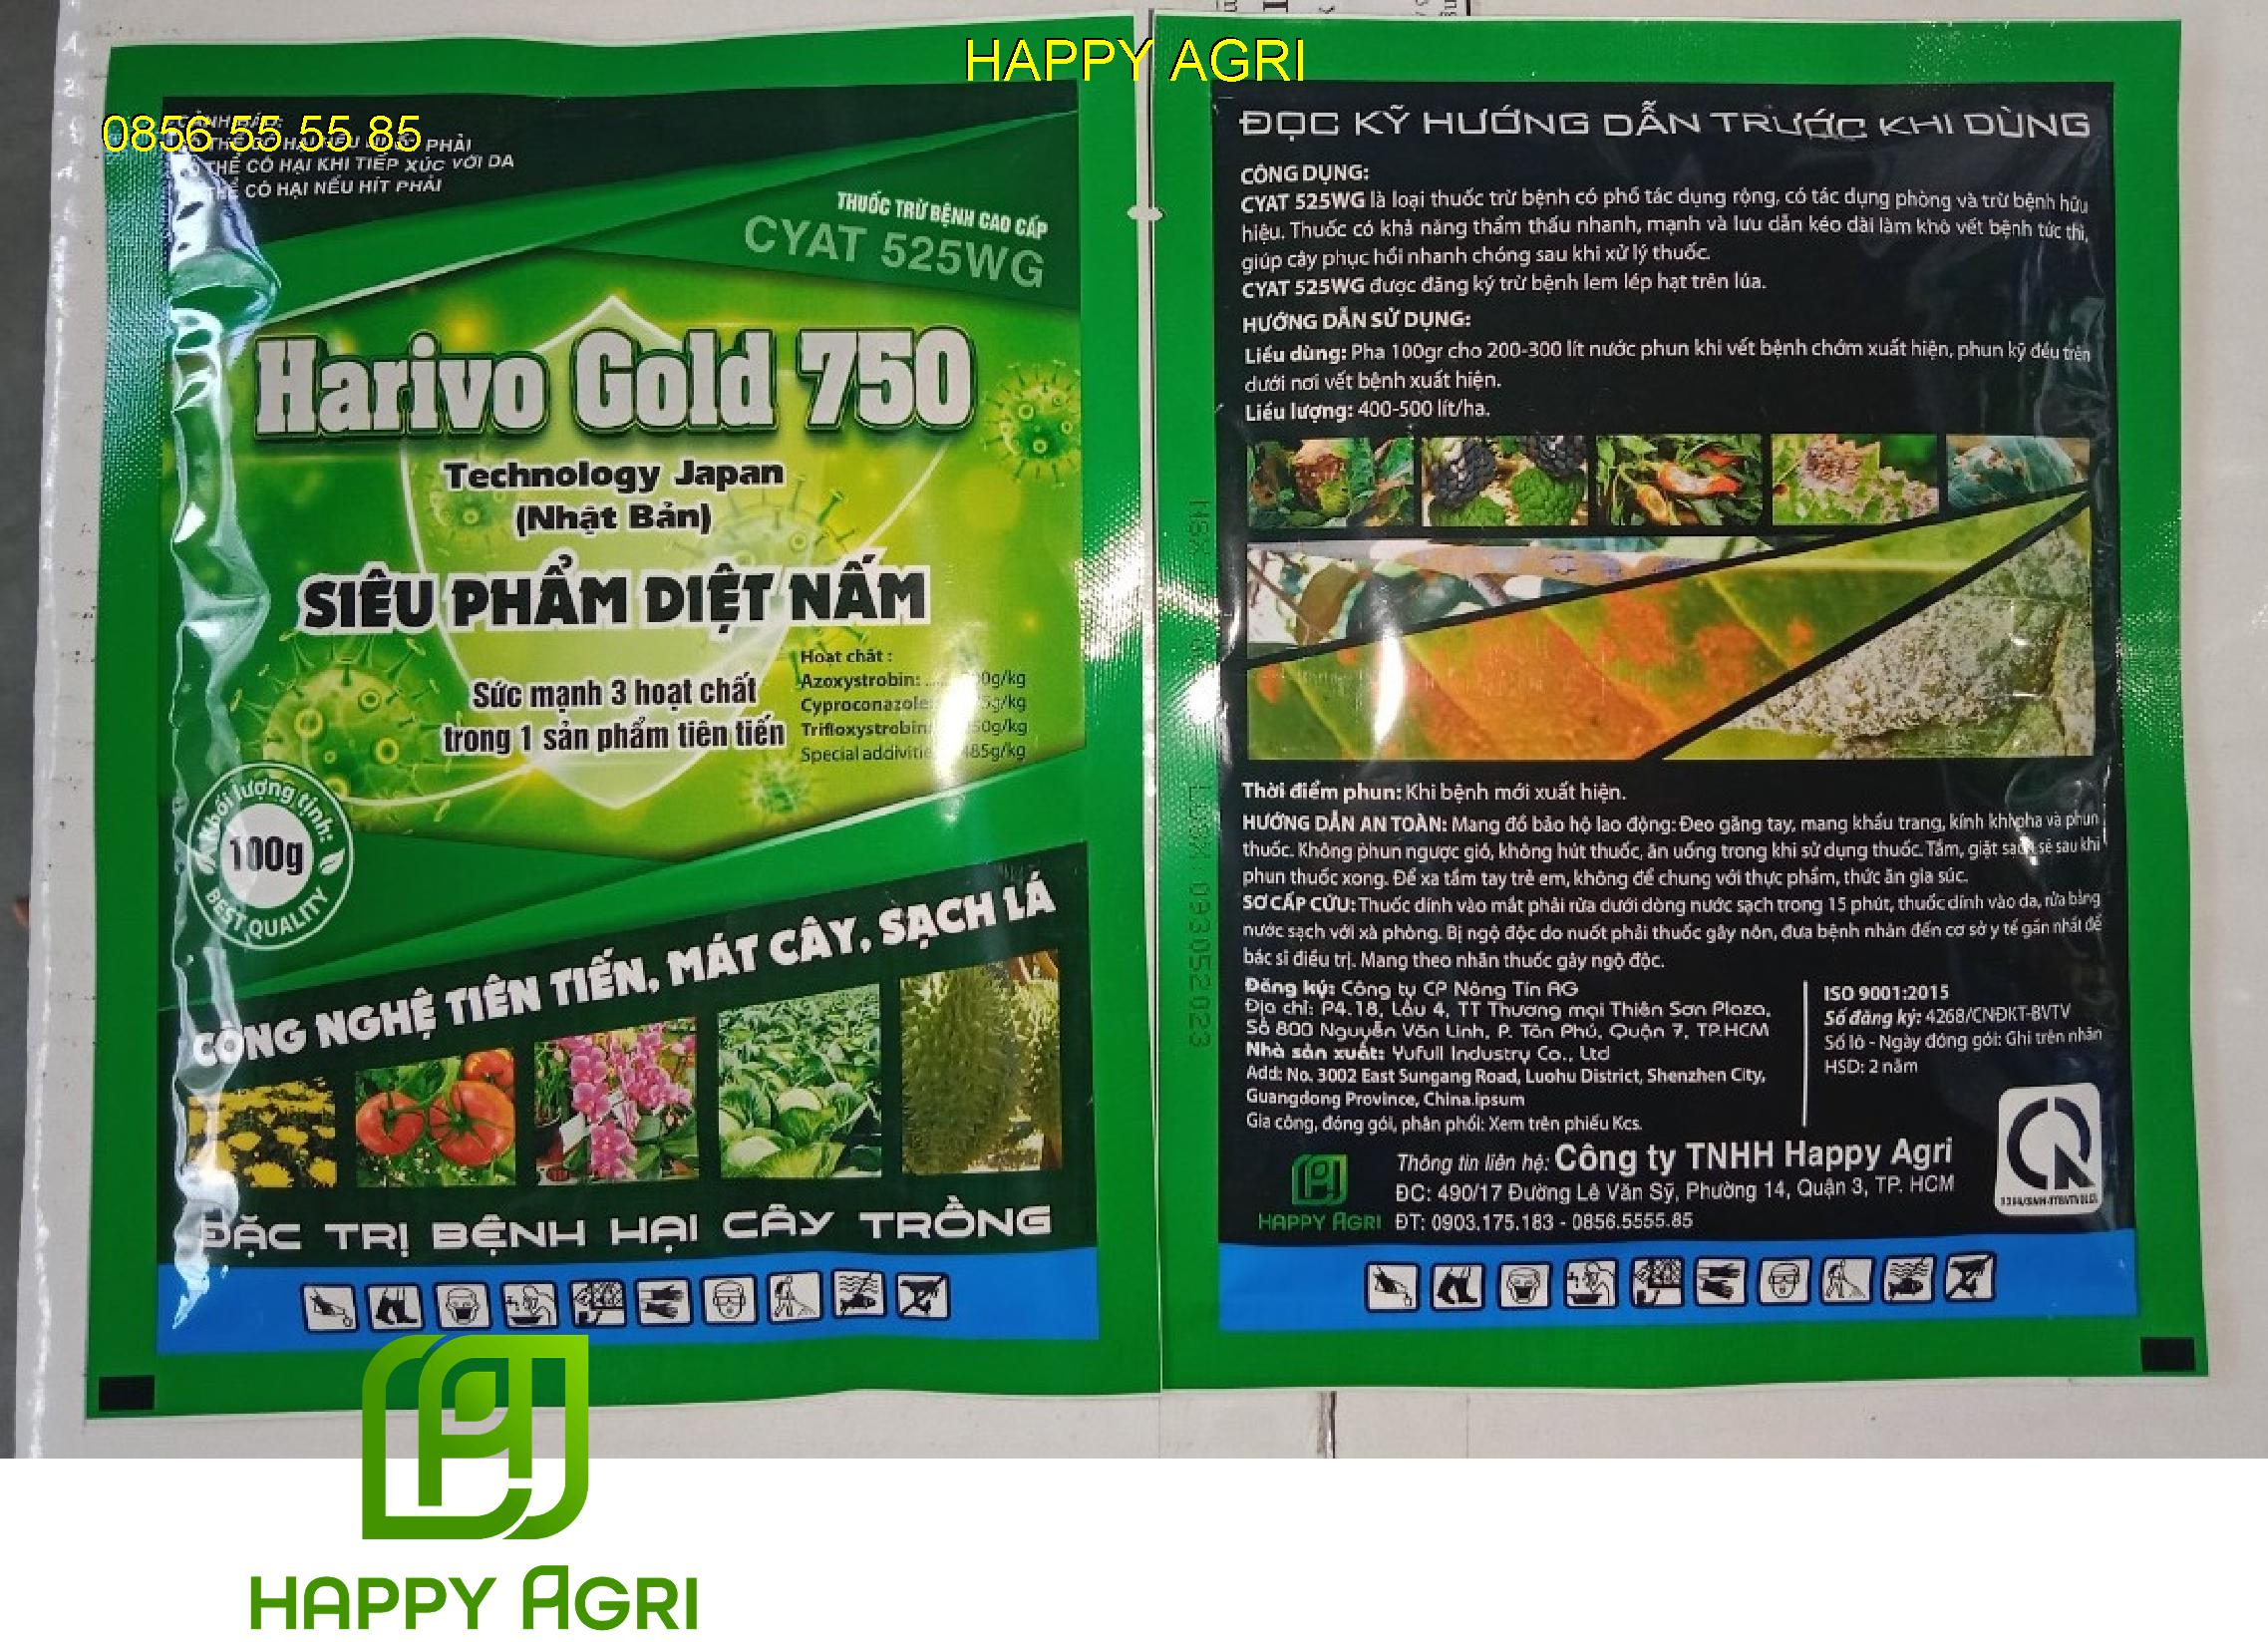 Harivo Gold 750 - thuốc trừ bệnh cao cấp CYAT 525WG